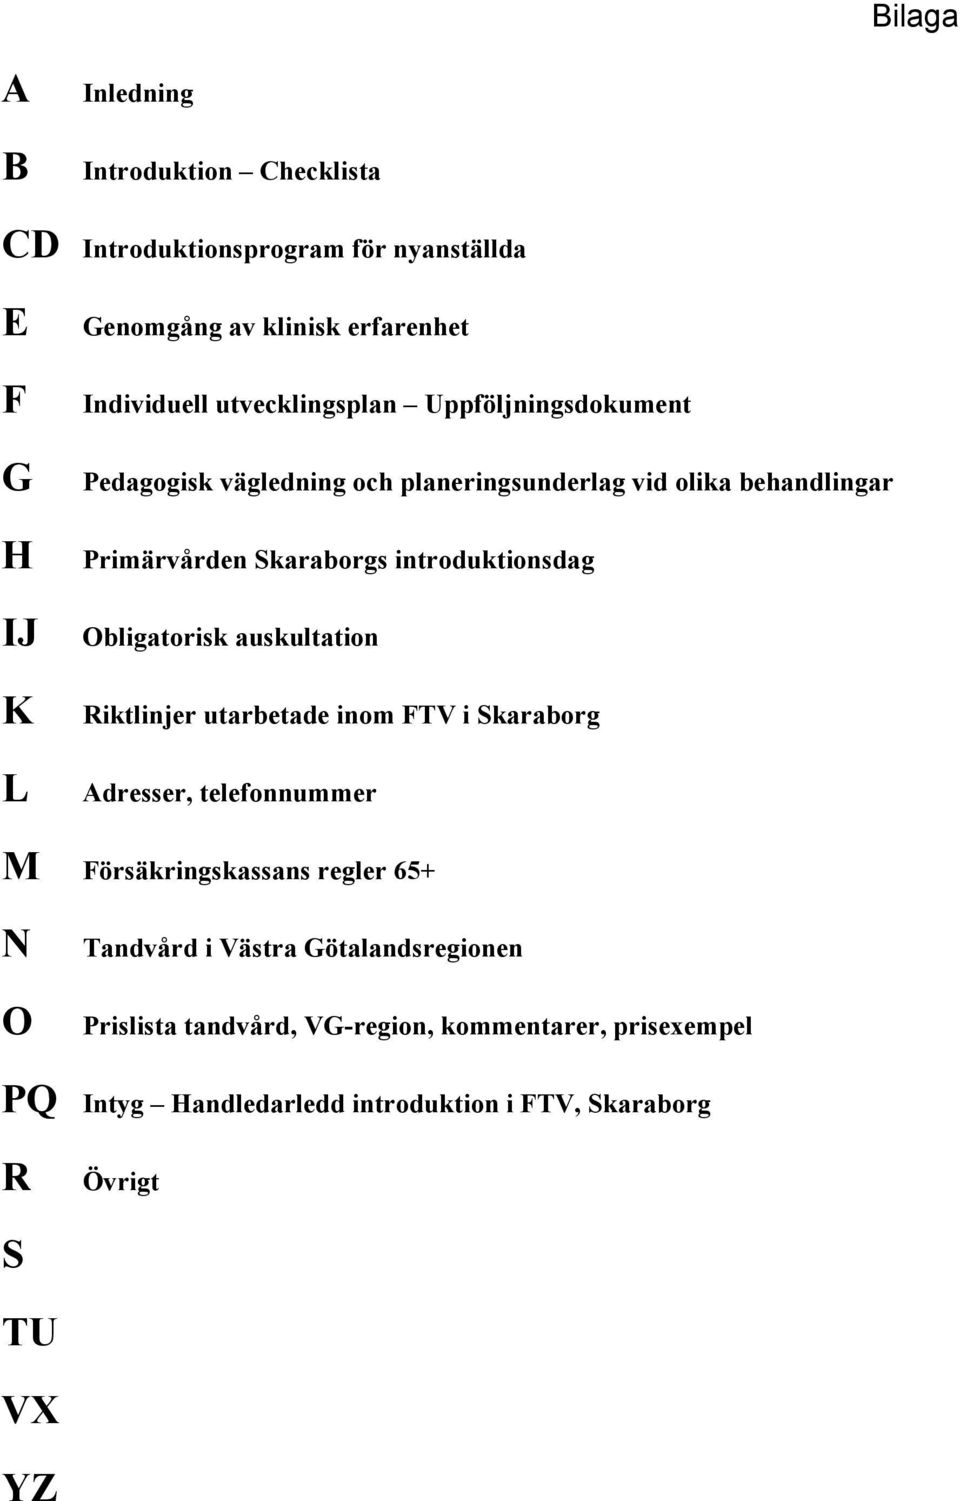 Obligatorisk auskultation Riktlinjer utarbetade inom FTV i Skaraborg Adresser, telefonnummer M Försäkringskassans regler 65+ N O Tandvård i